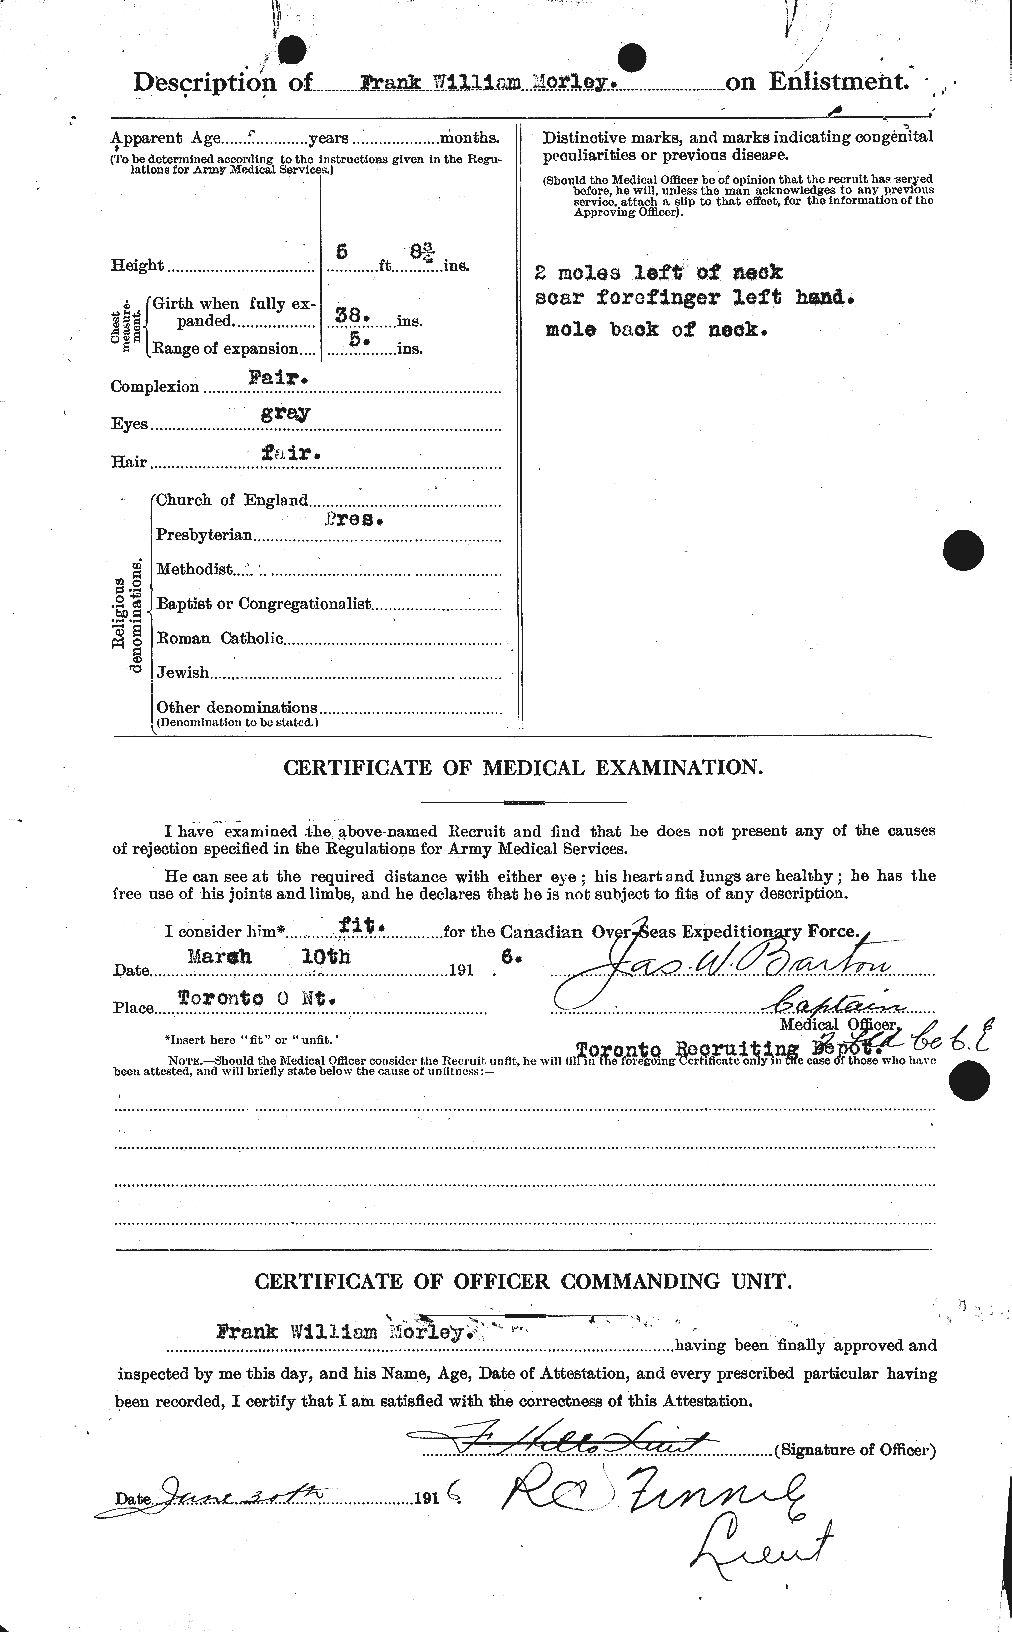 Dossiers du Personnel de la Première Guerre mondiale - CEC 508051b